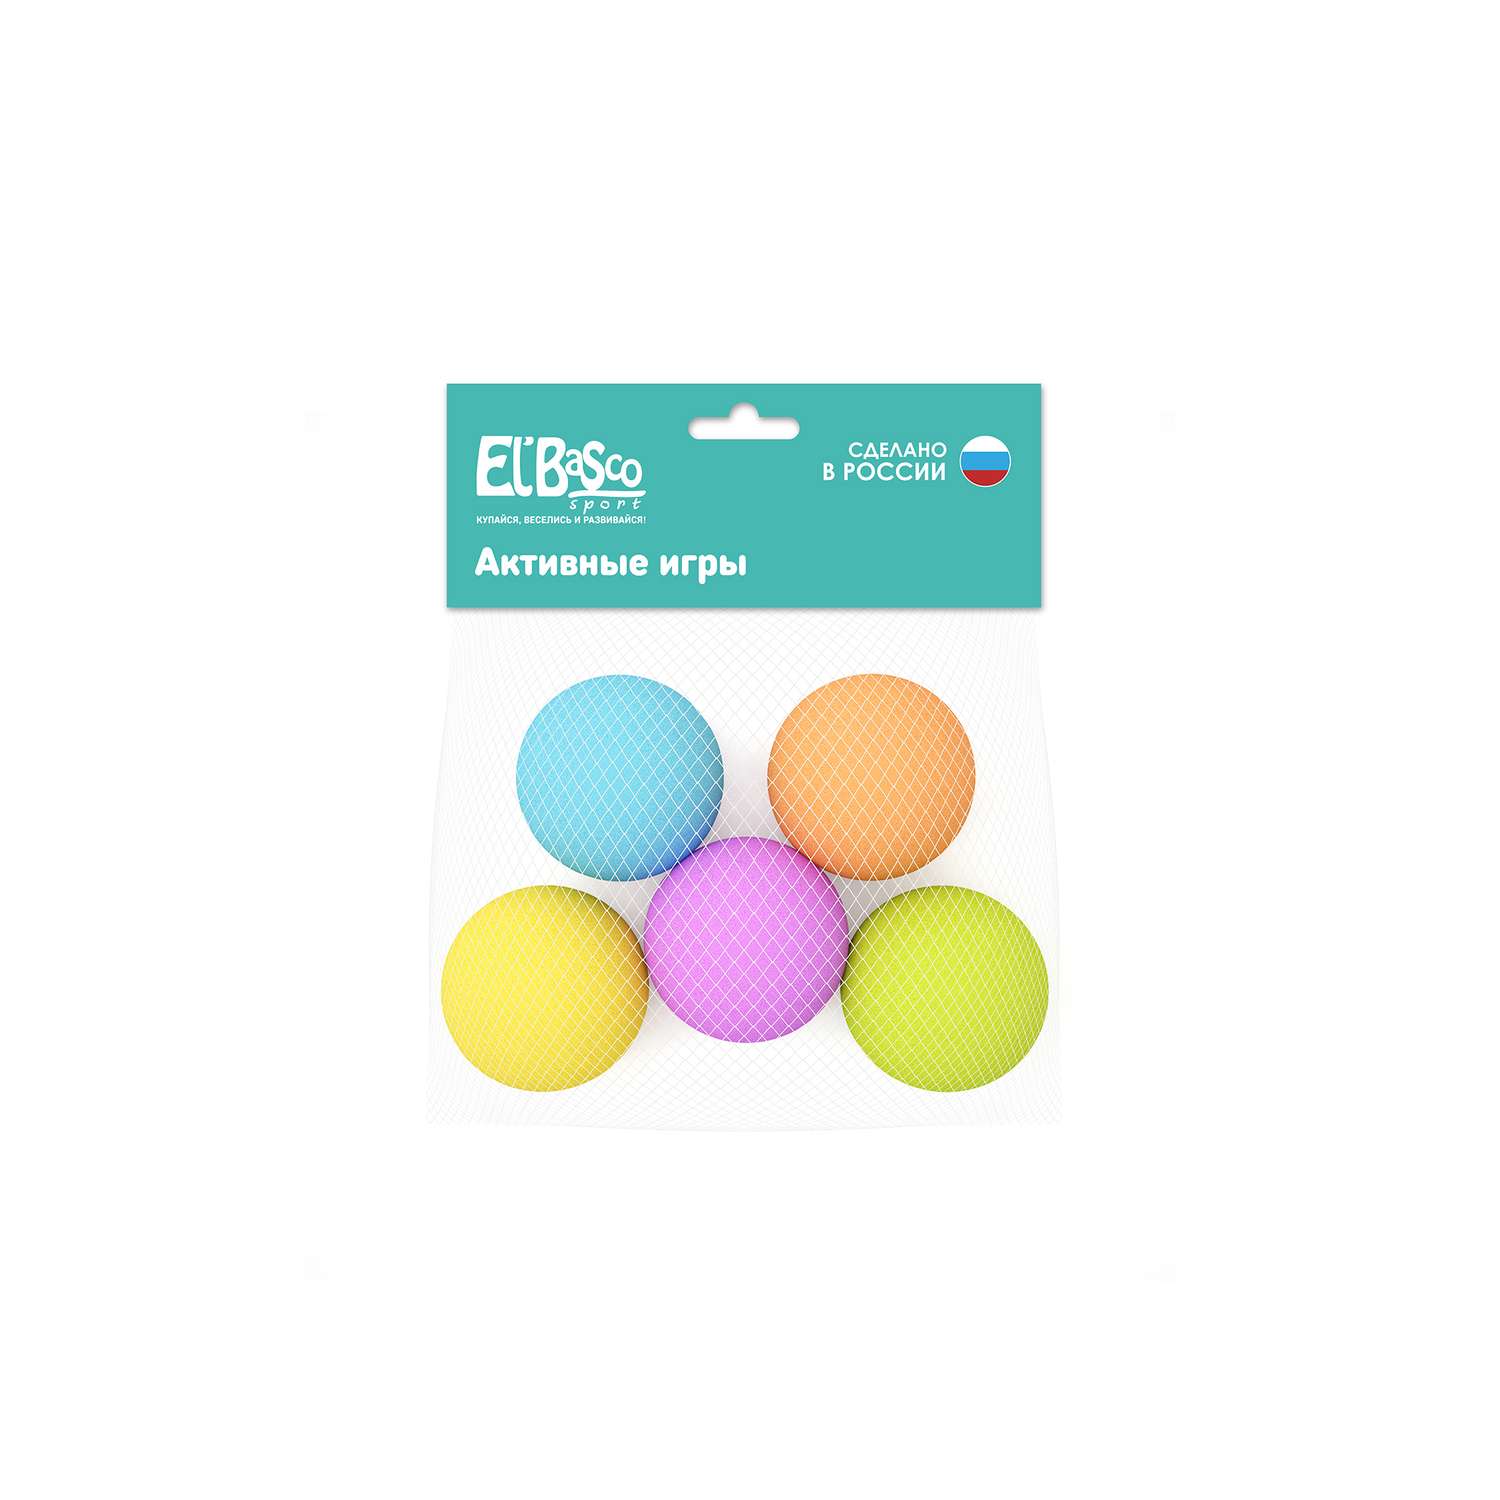 Мягкие мячики ElBascoToys 7 см 5 шт - фото 2